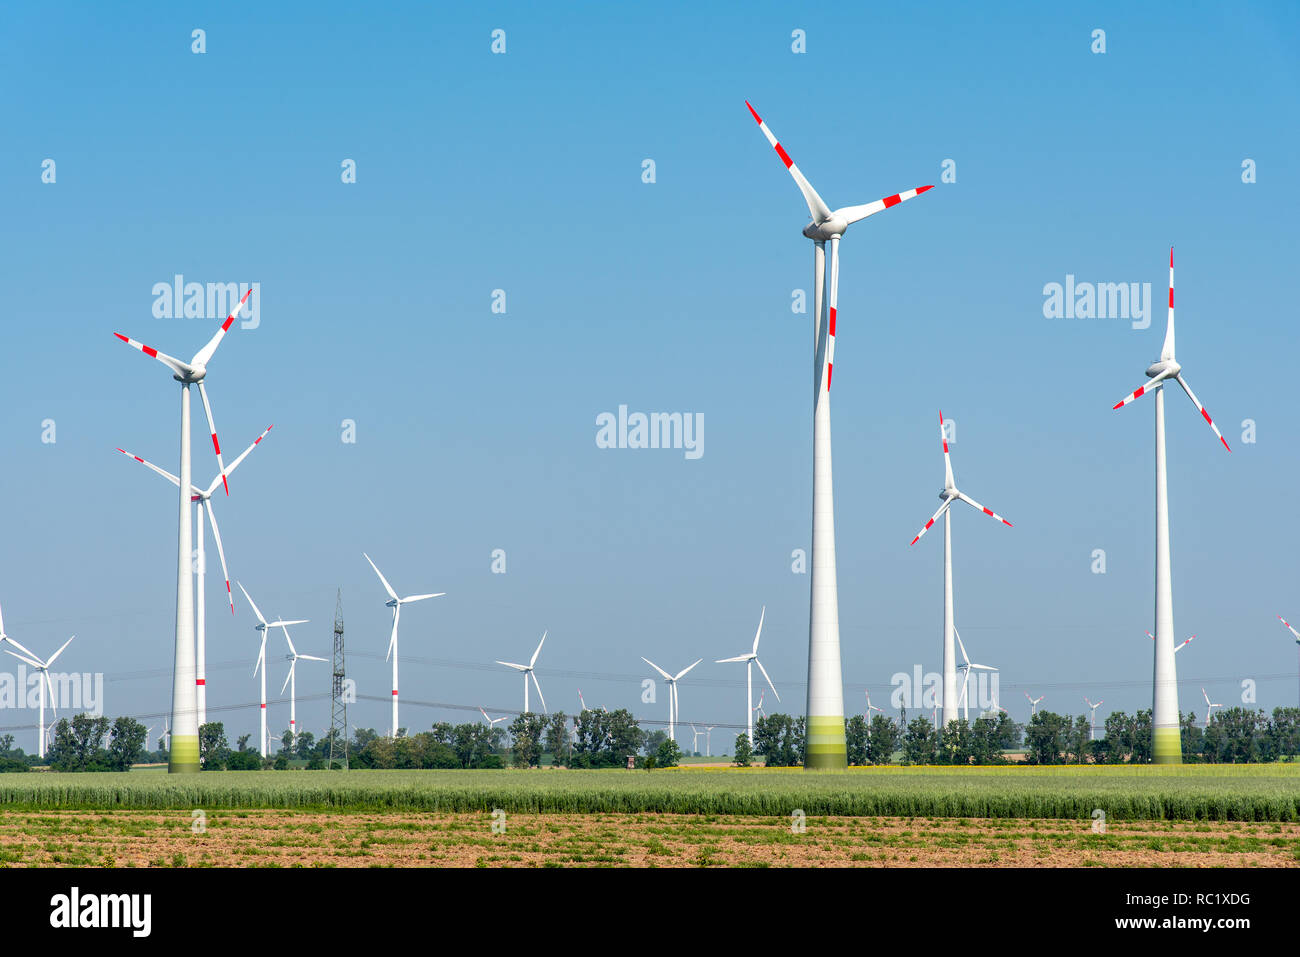 Wind power plants in the fields seen in rural Germany Stock Photo